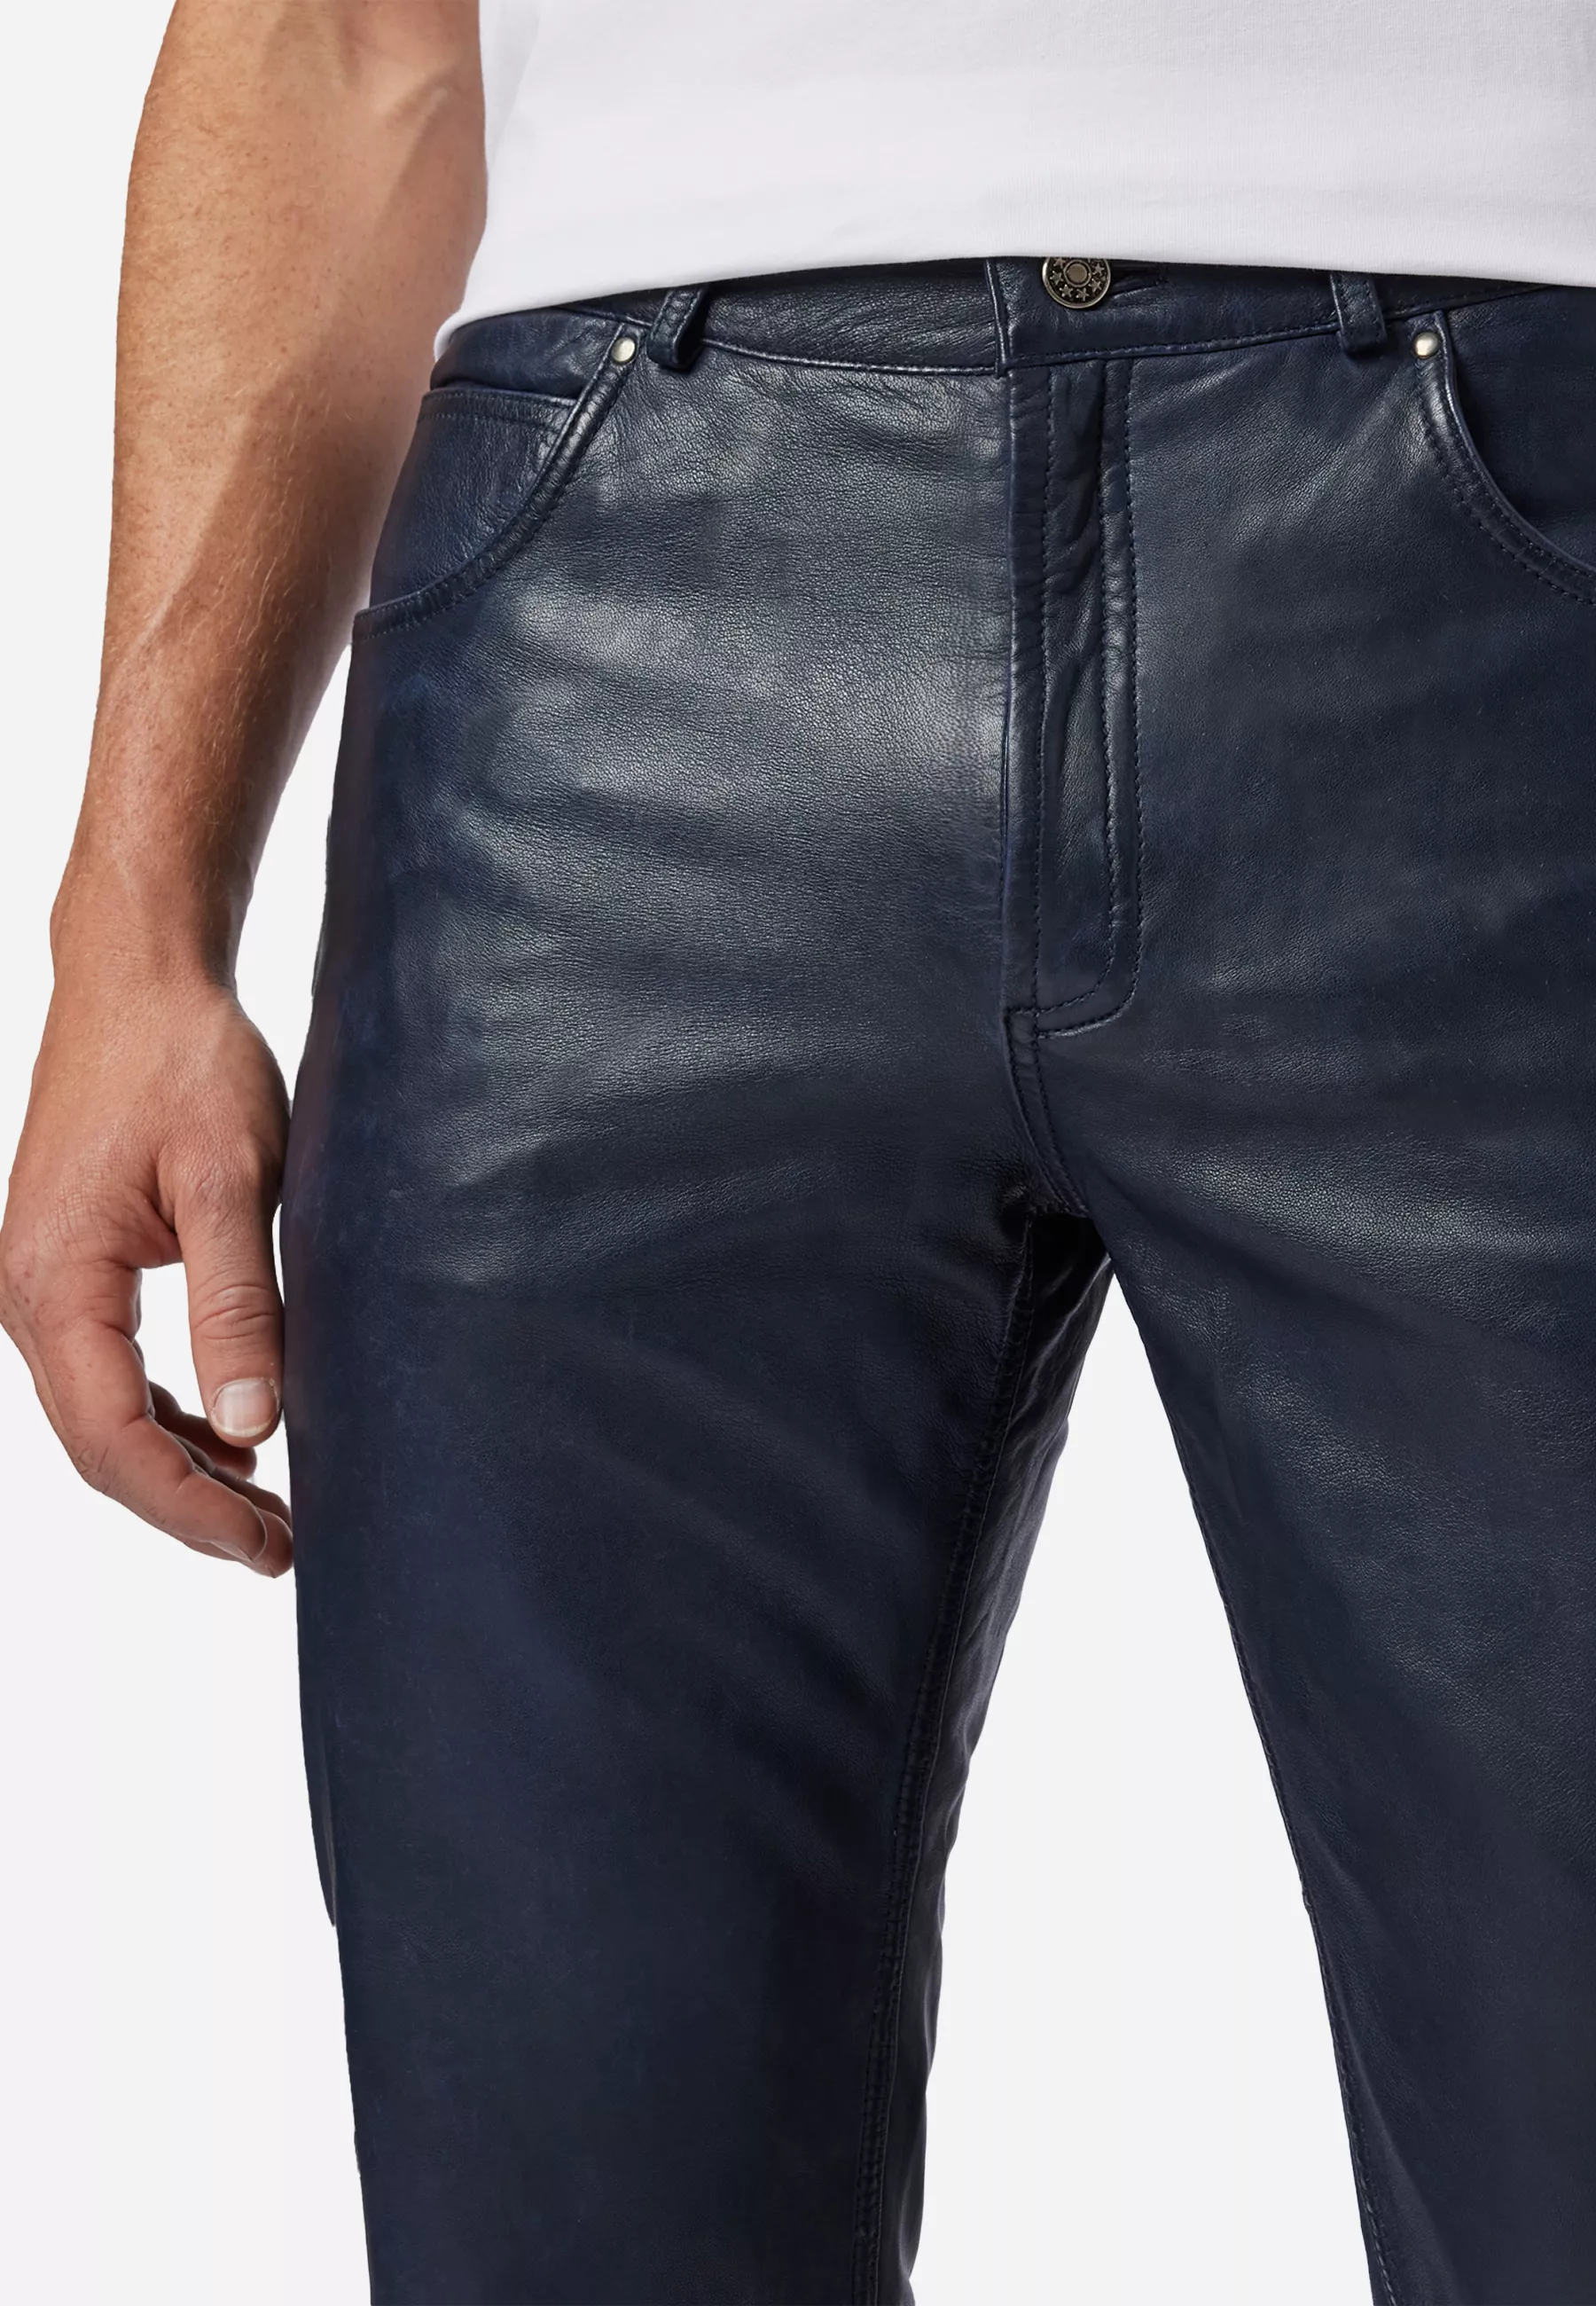 Herren Lederhose Trant Pant in Blau von Ricano, Detailansicht Taschen am Model